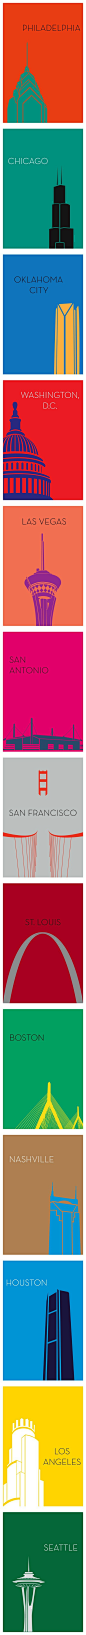 【城市极简明信片设计】达拉斯平面设计师Ryan M. Russell设计了一套色彩明亮的极简城市明信片系列。如你所见，纽约的帝国大厦，旧金山的金门大桥，每座标志性建筑物代表一个城市。（转）